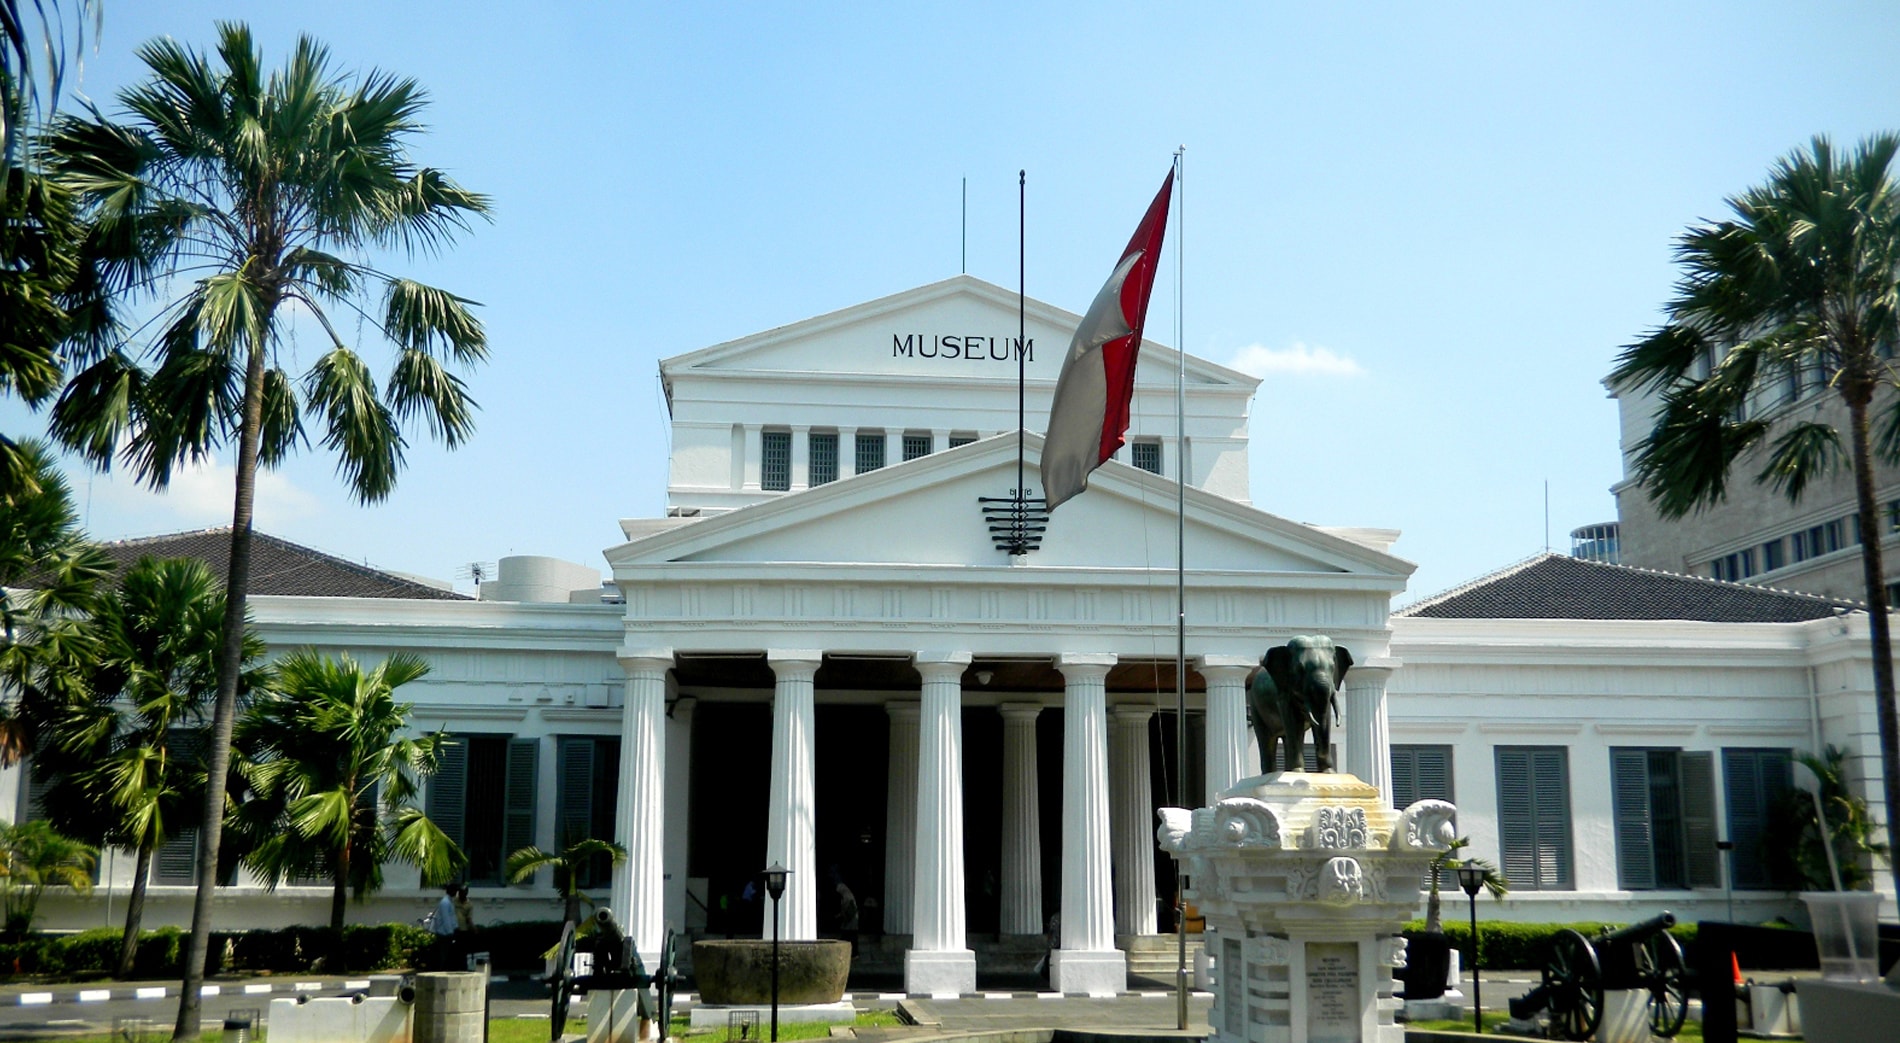 Bangunan Bersejarah Di Jakarta Dan Keterangannya Sejarah Lengkap | My ...